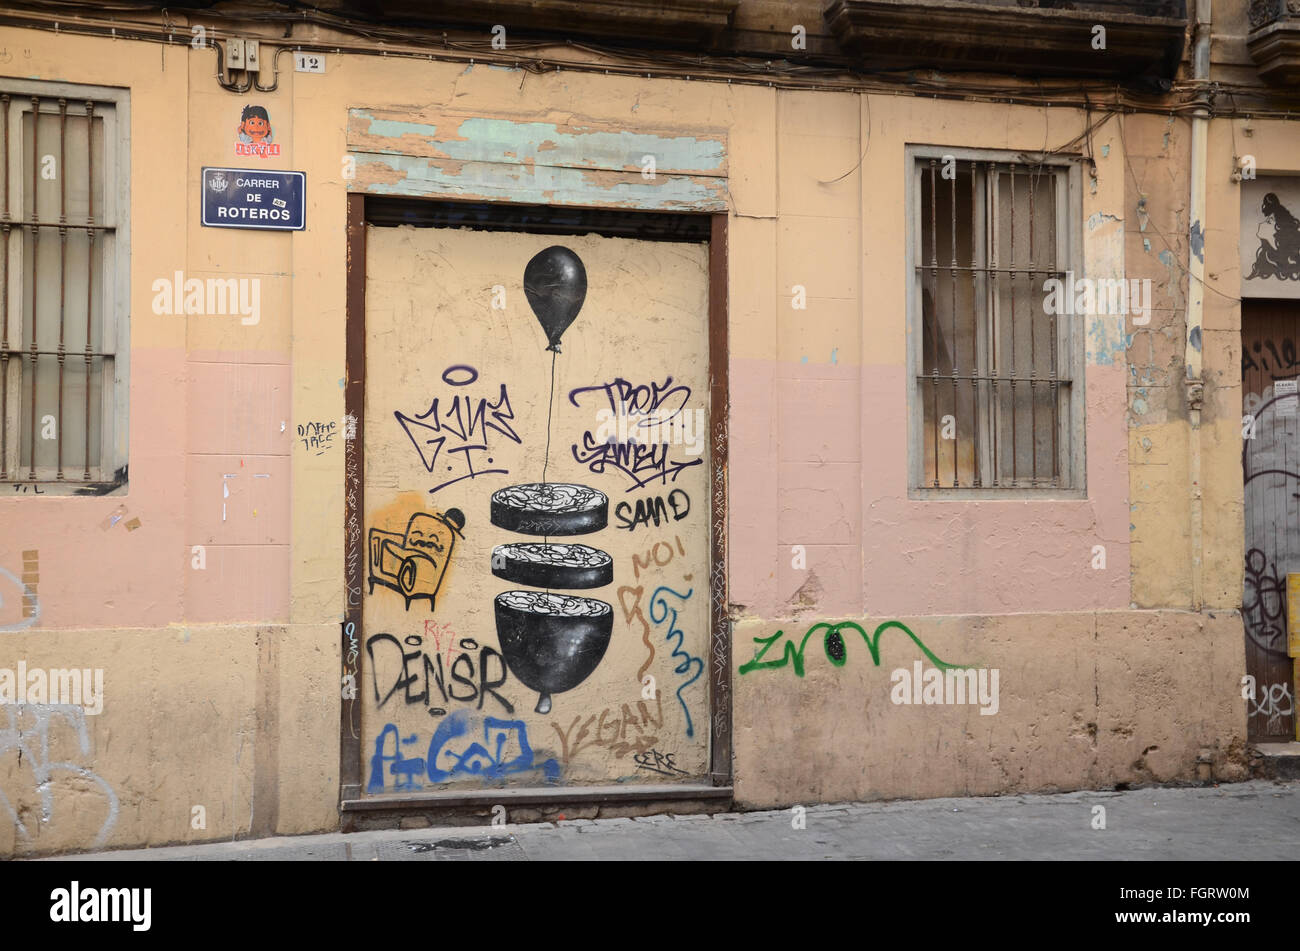 graffiti covered walls in Barrio del Carmen, Valencia Spain Stock Photo